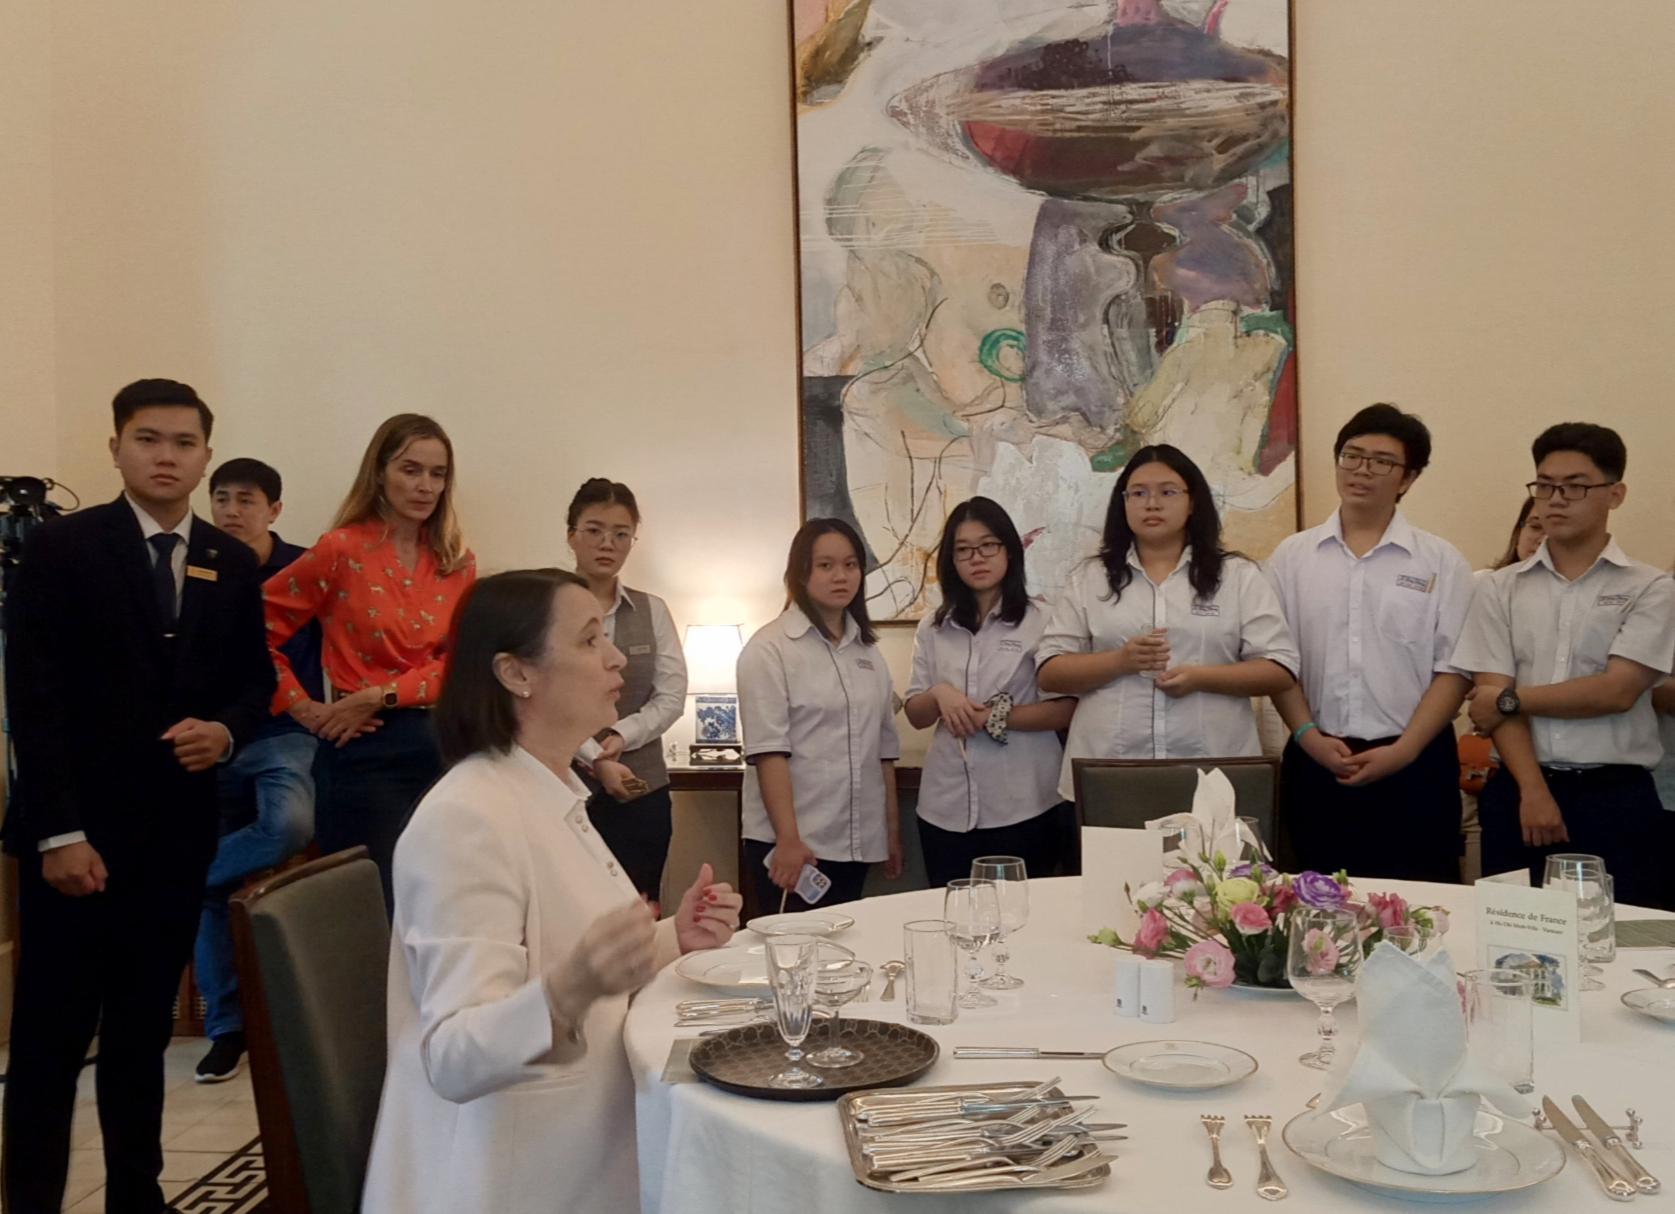 Bà Emmanuelle Pavillon-Grosser - Tổng lãnh sự Pháp tại TPHCM cùng với đội ngũ nhân viên Hotel des Art Saigon - M Gallery Collectin dạy quy tắc bàn ăn kiểu pháp cho các bạn học sinh. Ảnh: Vi Vi.